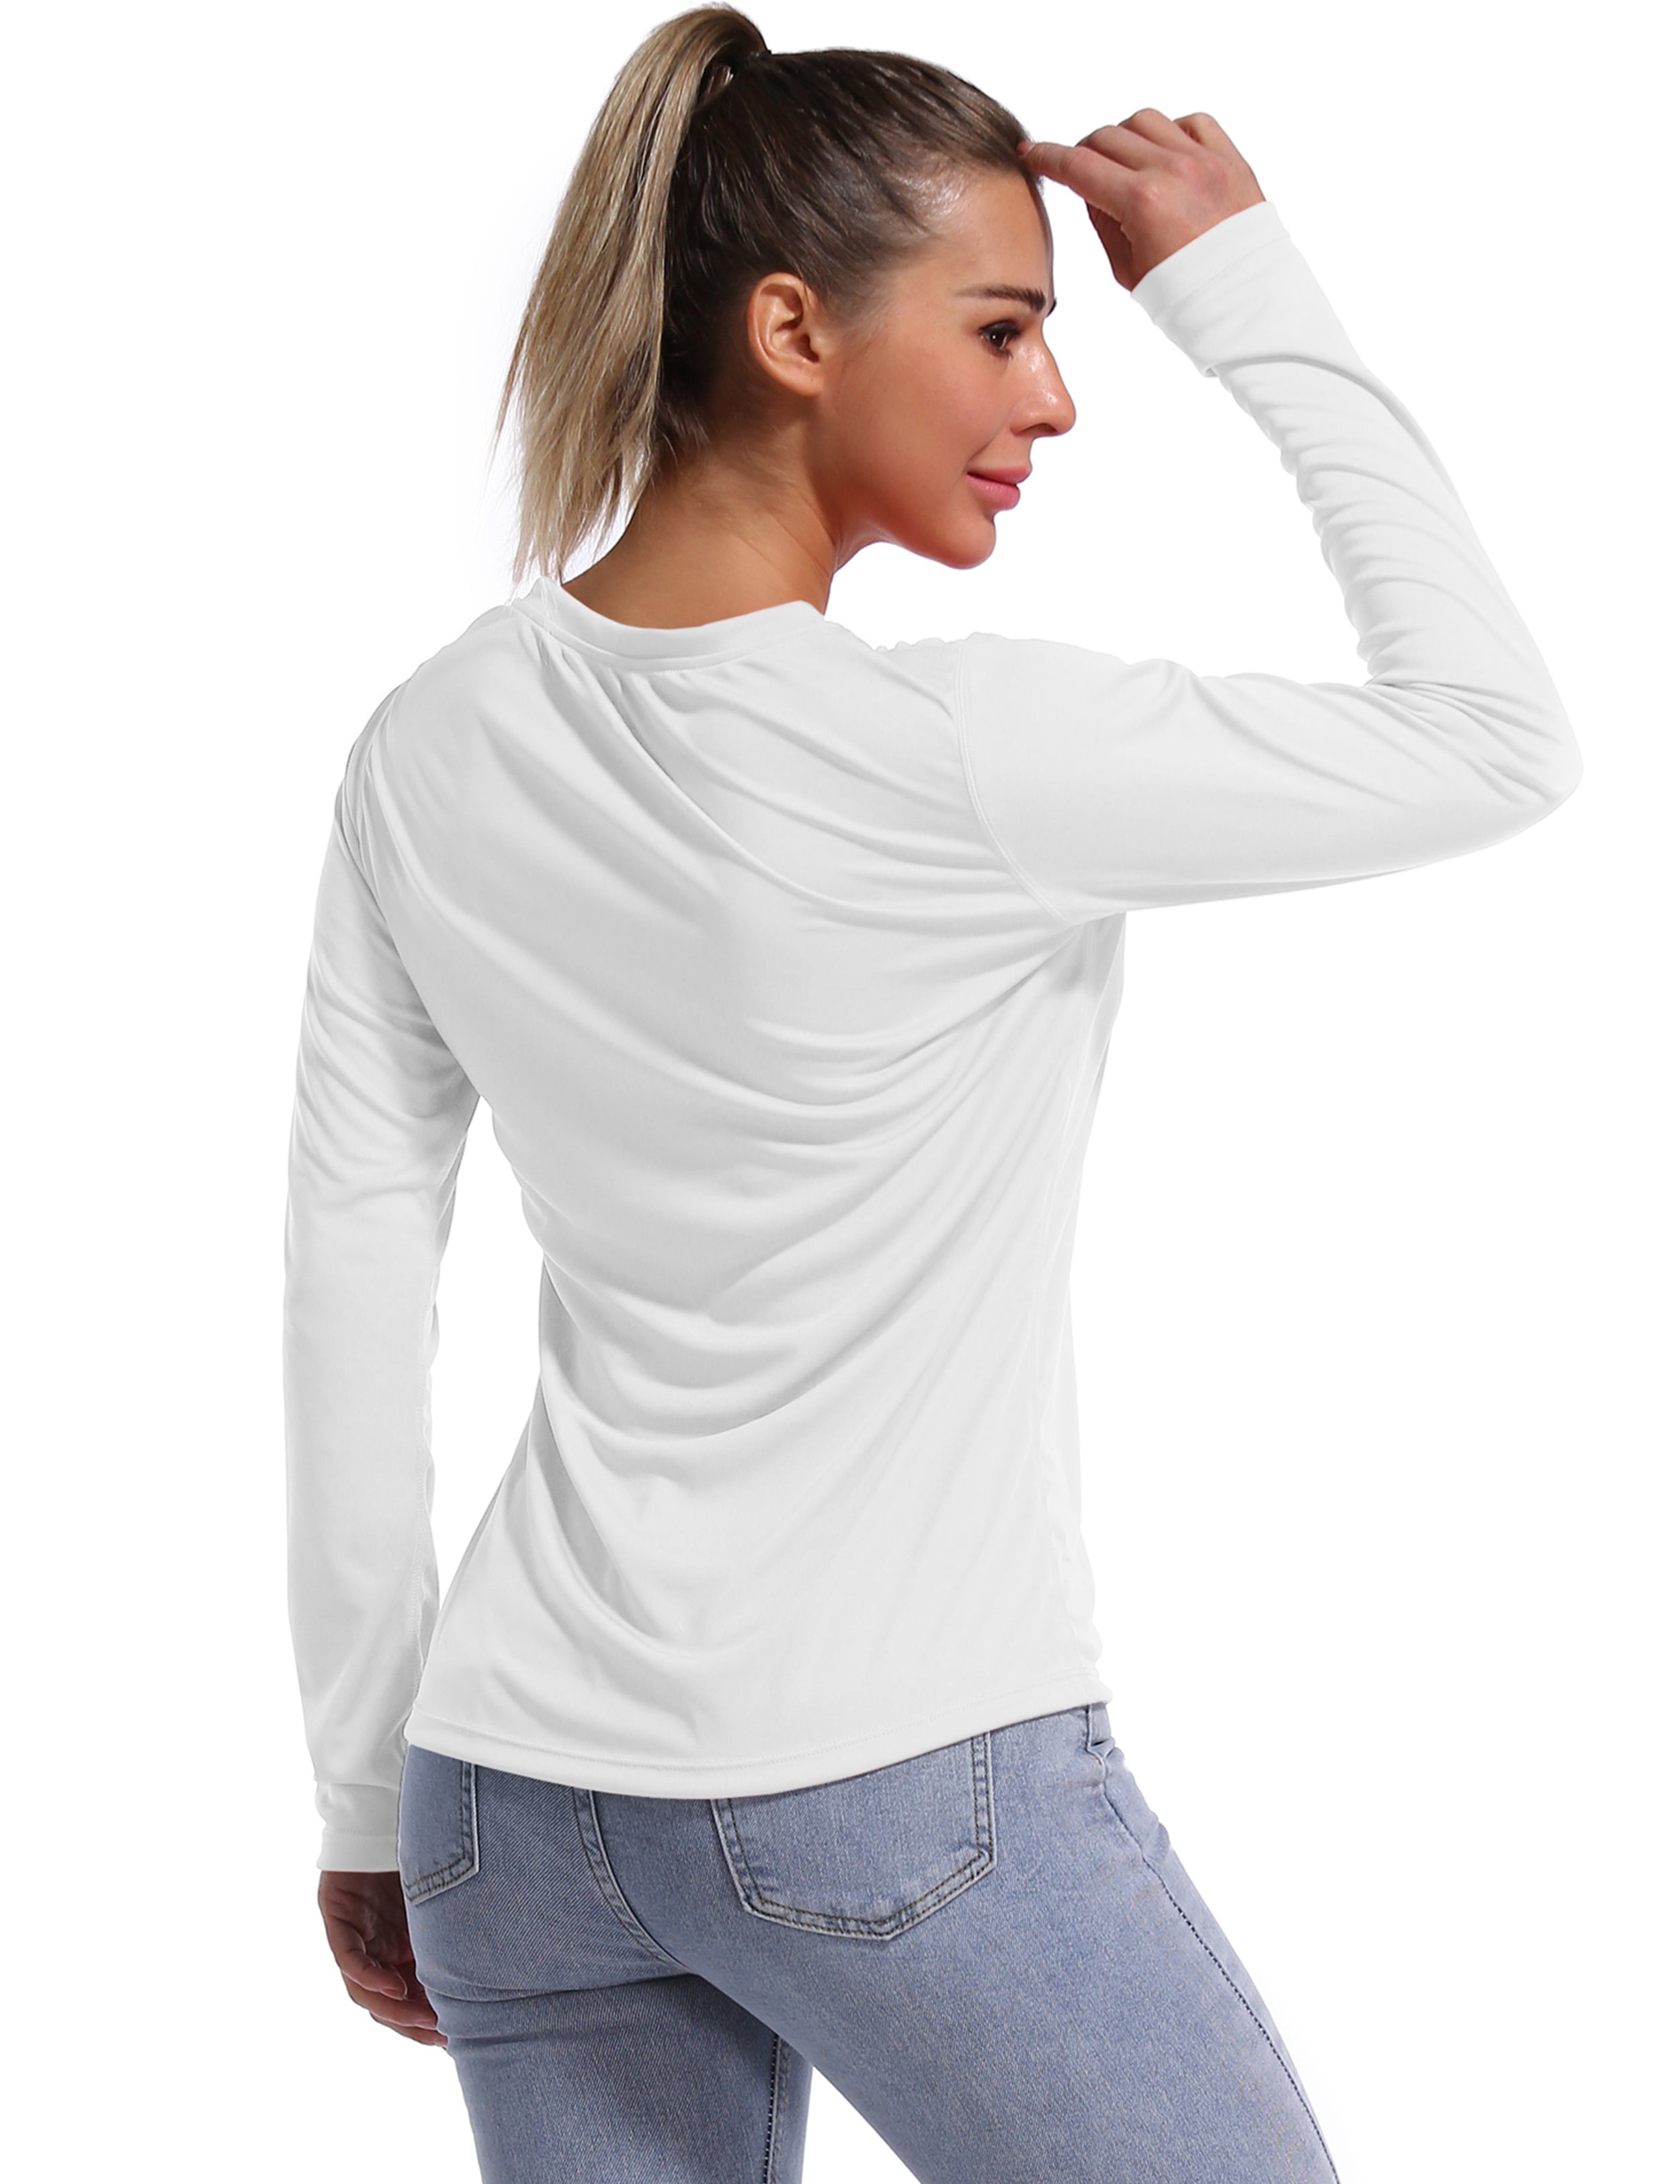 V Neck Long Sleeve Athletic Shirts white_Pilates